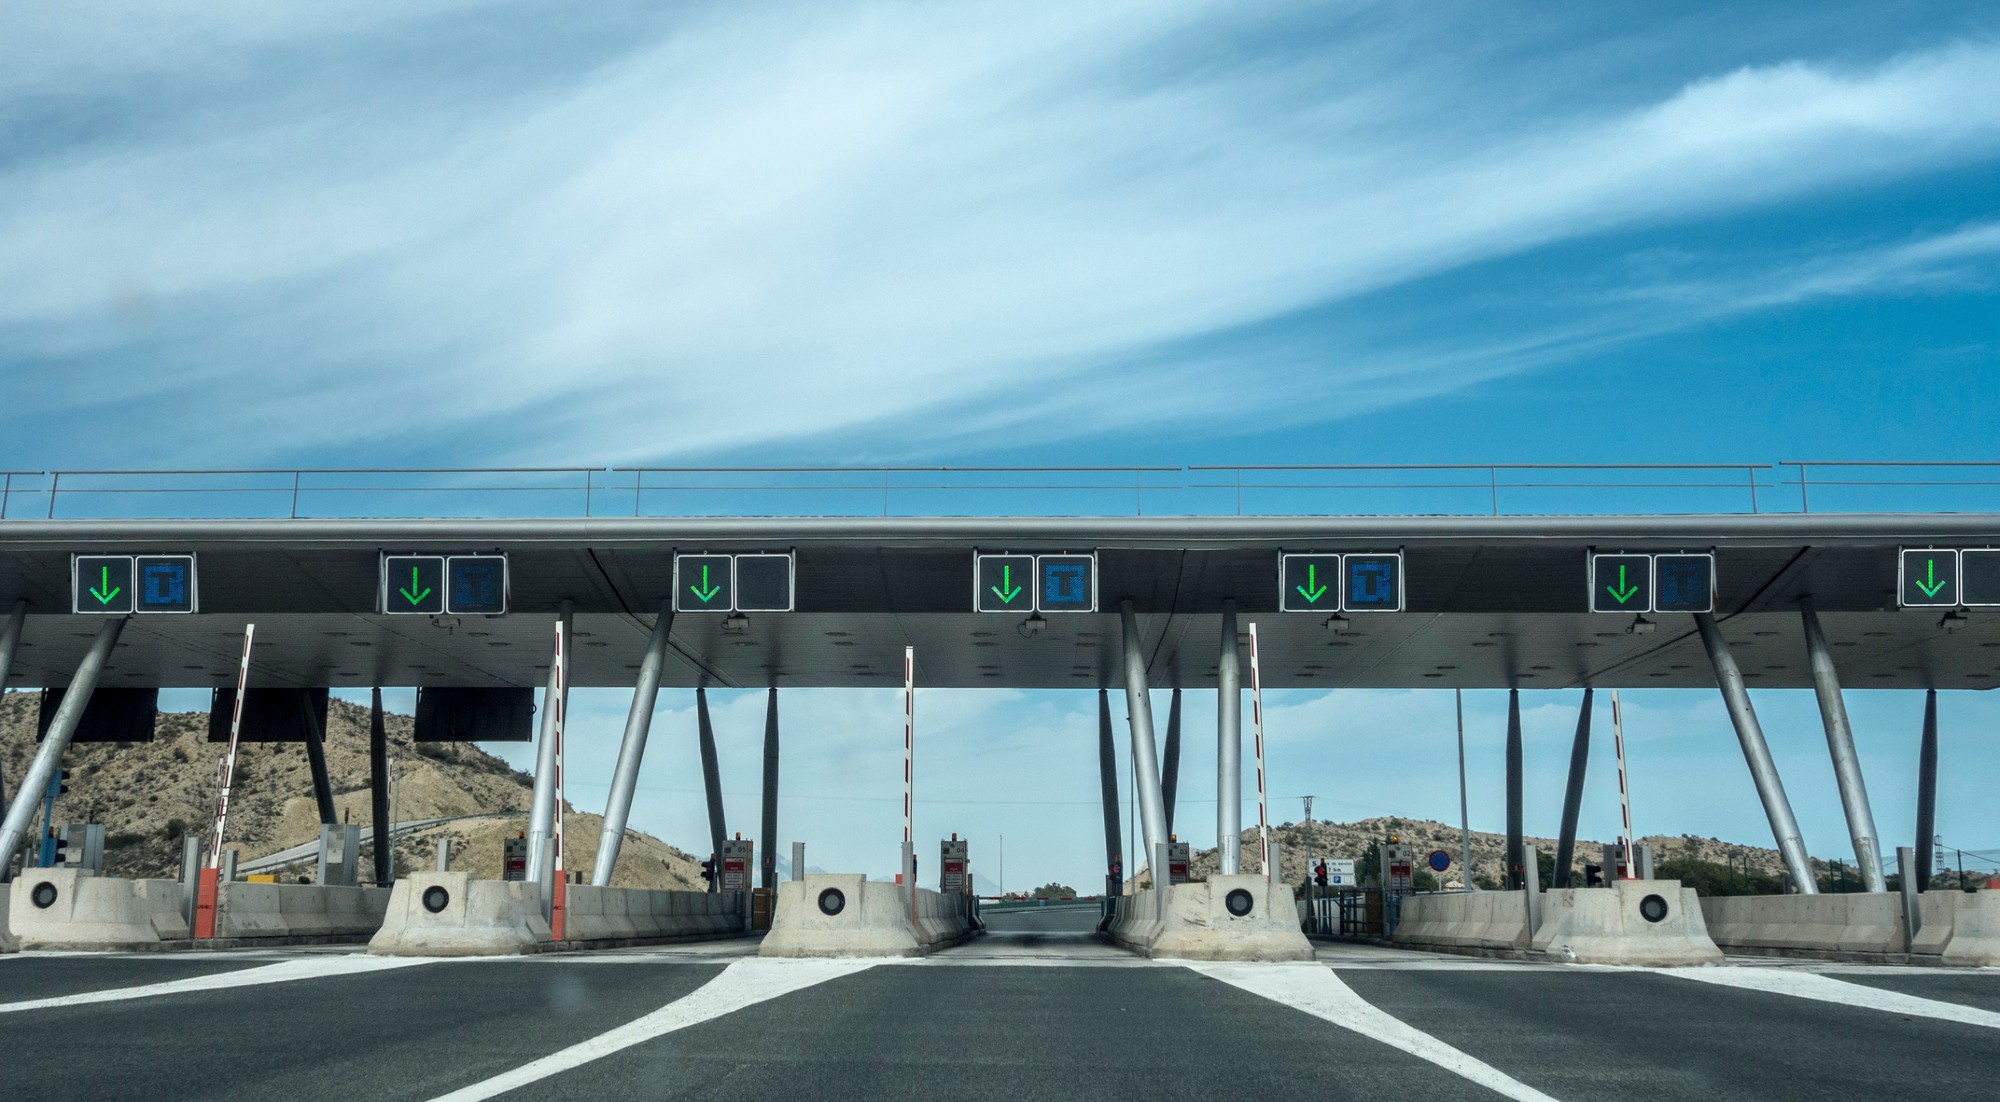 Las autopistas españolas son de las más caras de Europa